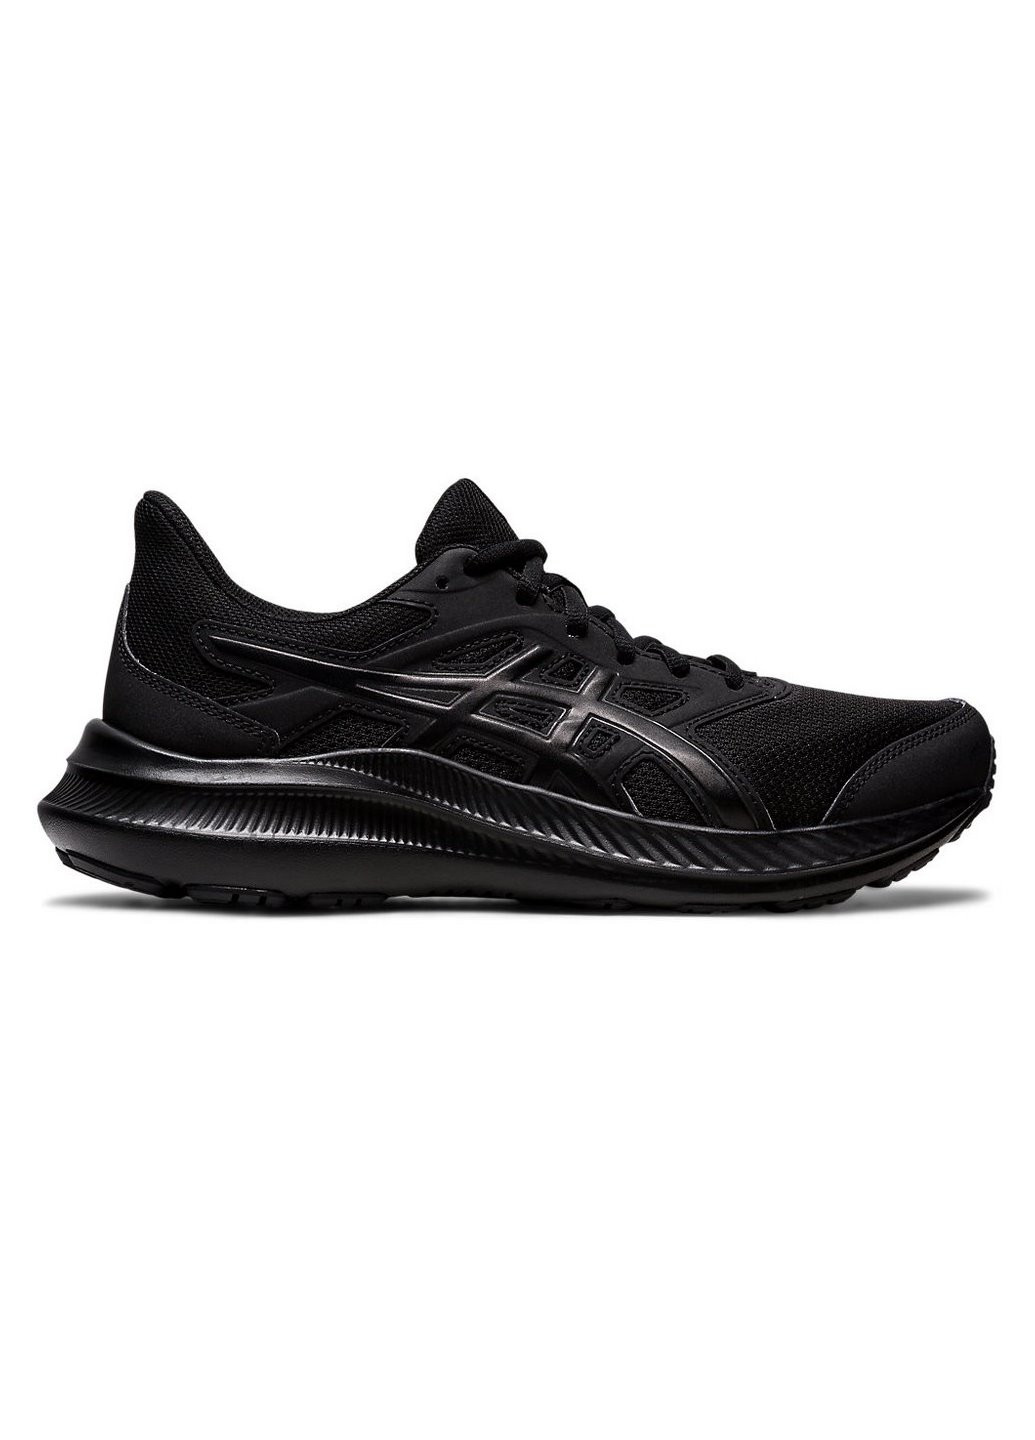 Чорні осінні жіночі бігові кросівки jolt 4 1012b421-001 Asics